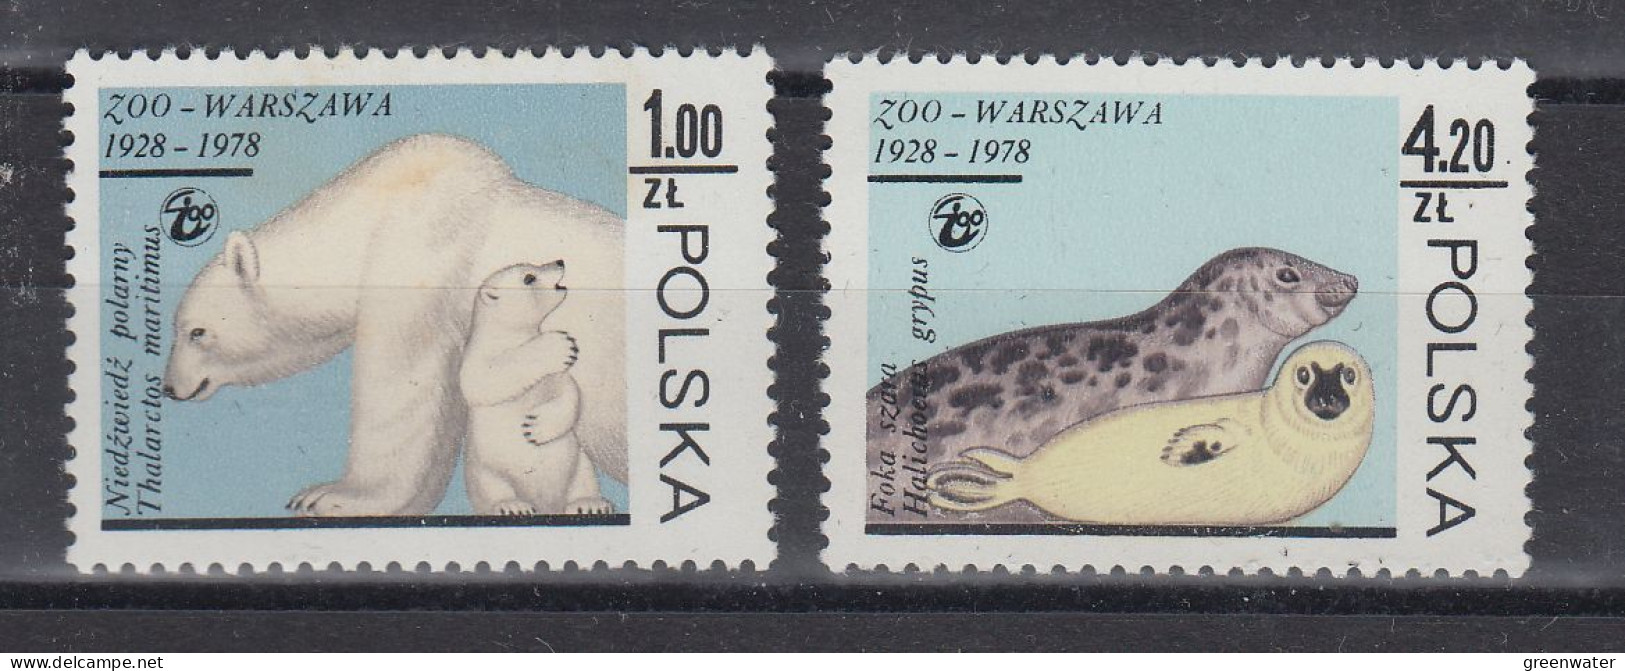 Poland 1978 Zoo Warsaw Icebear & Seal 2v ** Mnh ('58574) - Faune Arctique